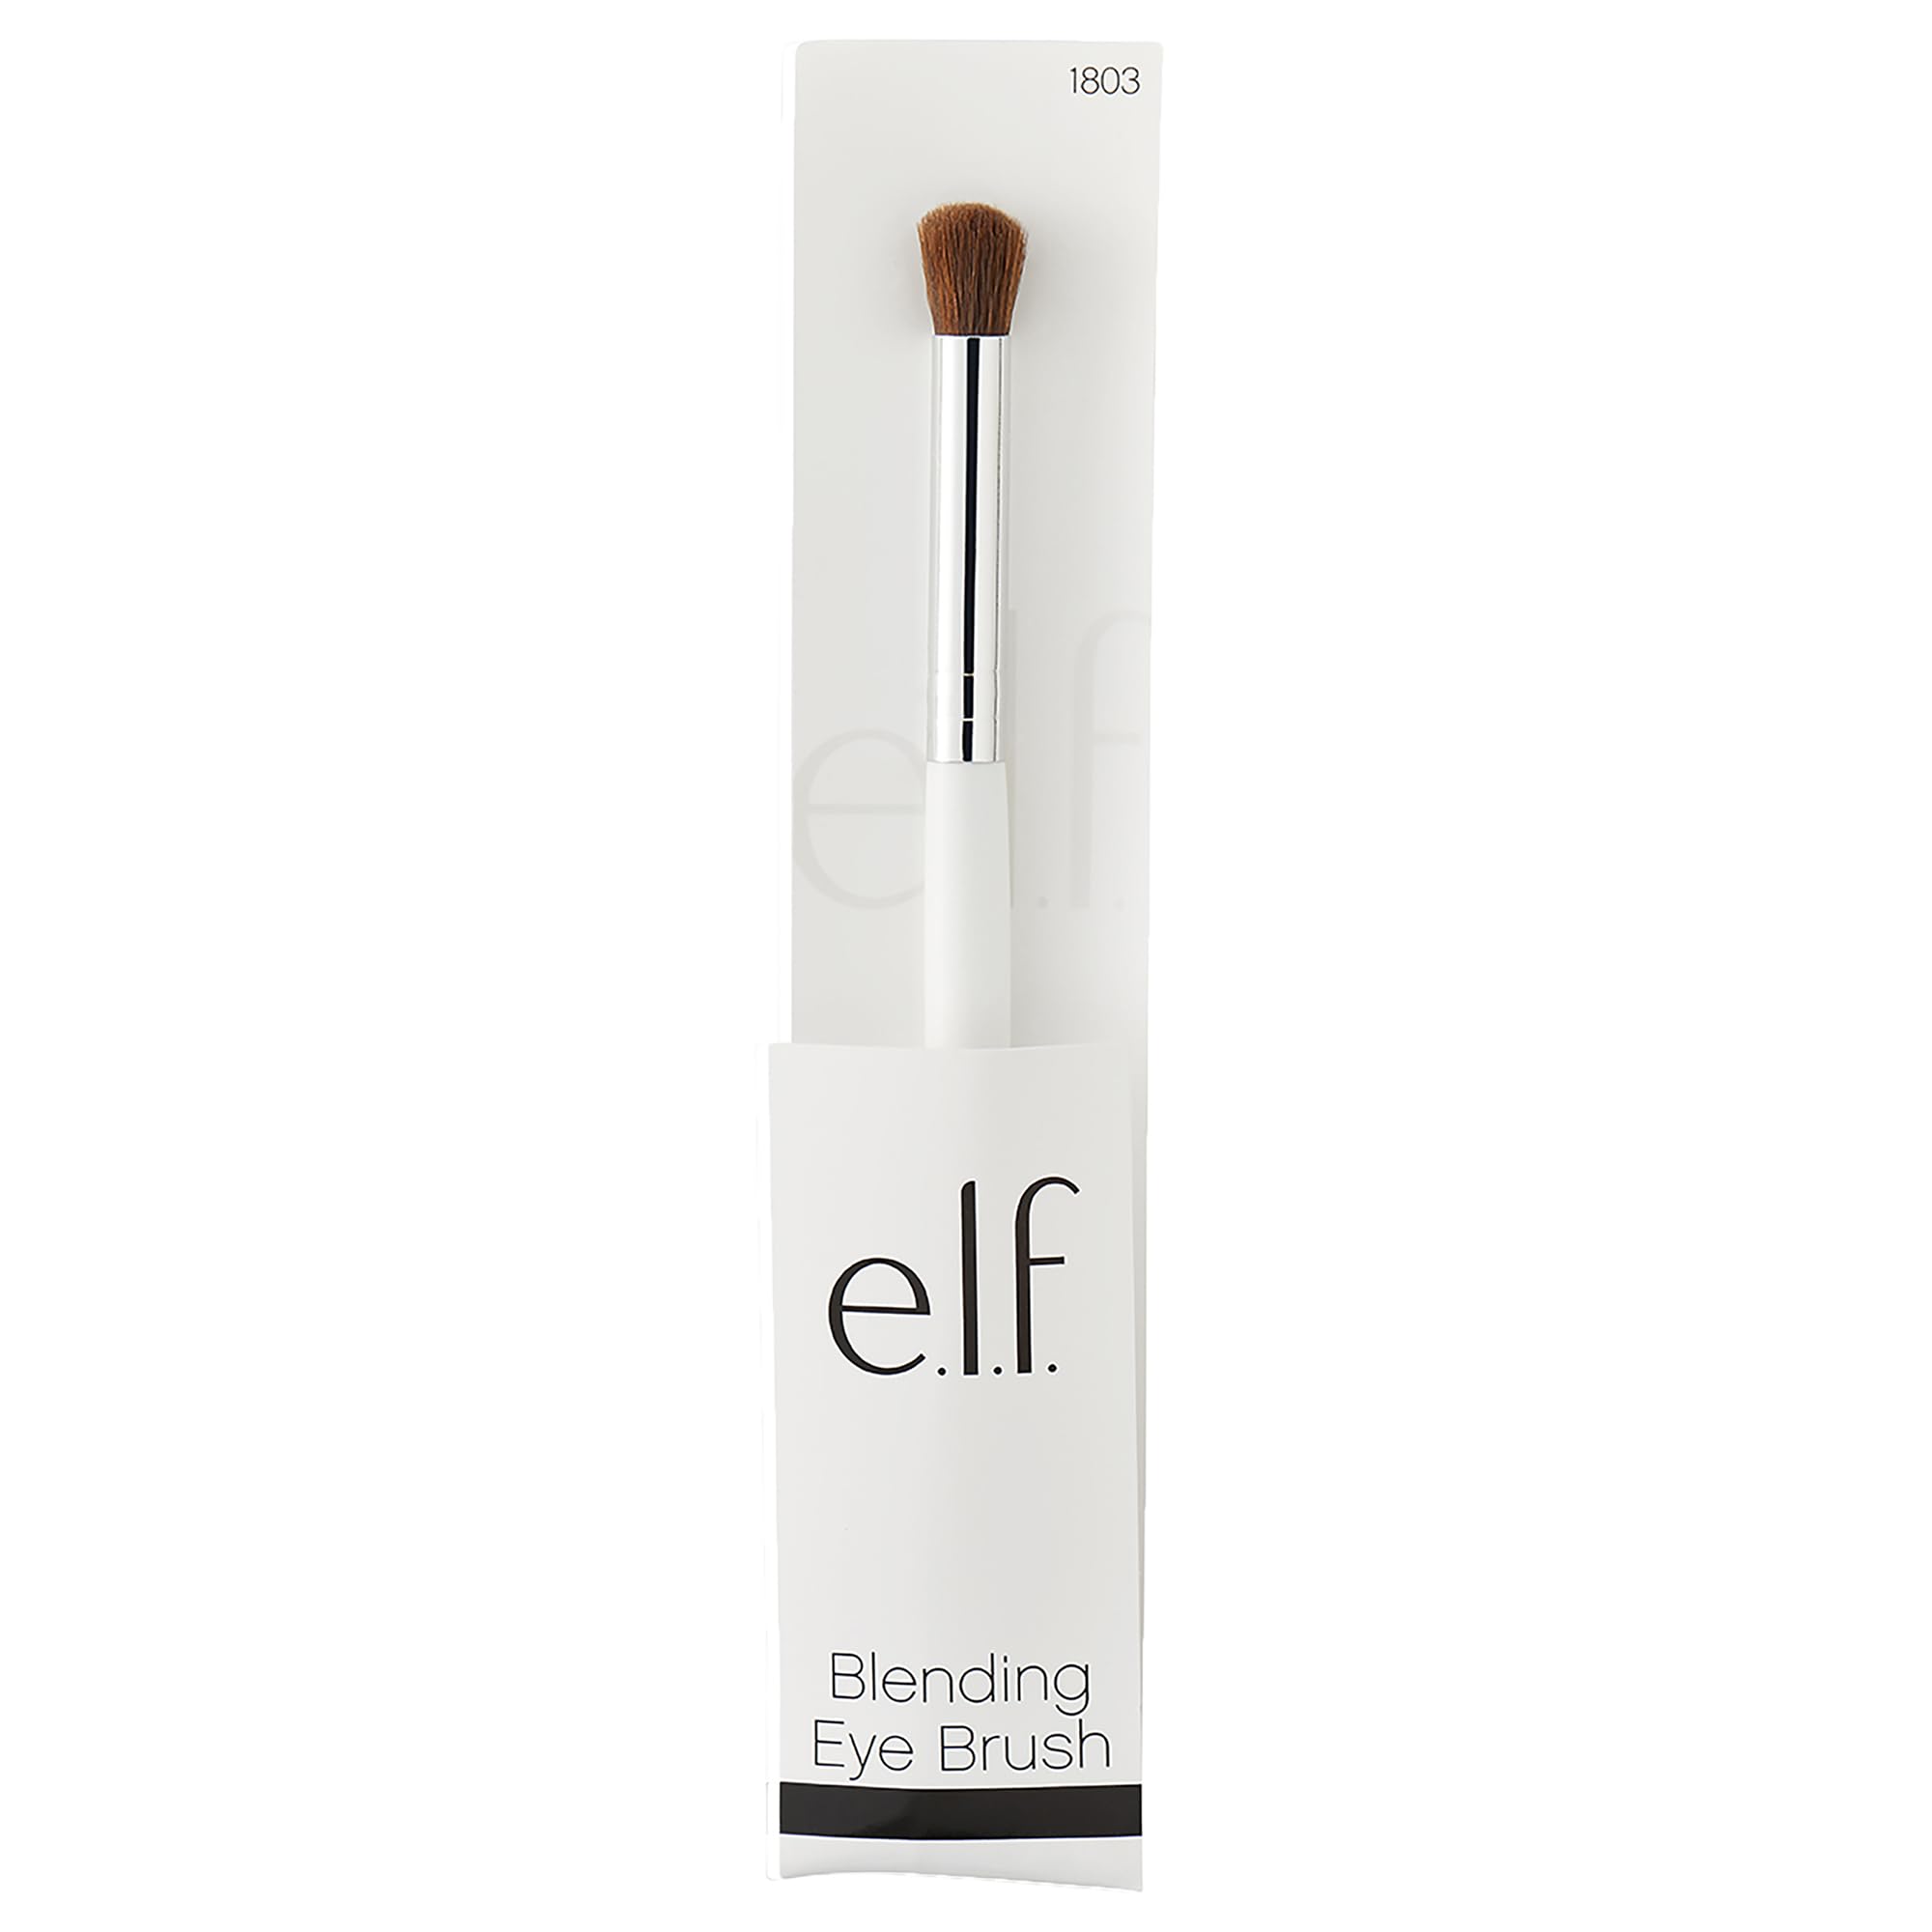 e.l.f. Blending Eye Brush, Softens Dramatic Edges & Fine Lines, For Eyeshadow, Eyeliner & Concealer